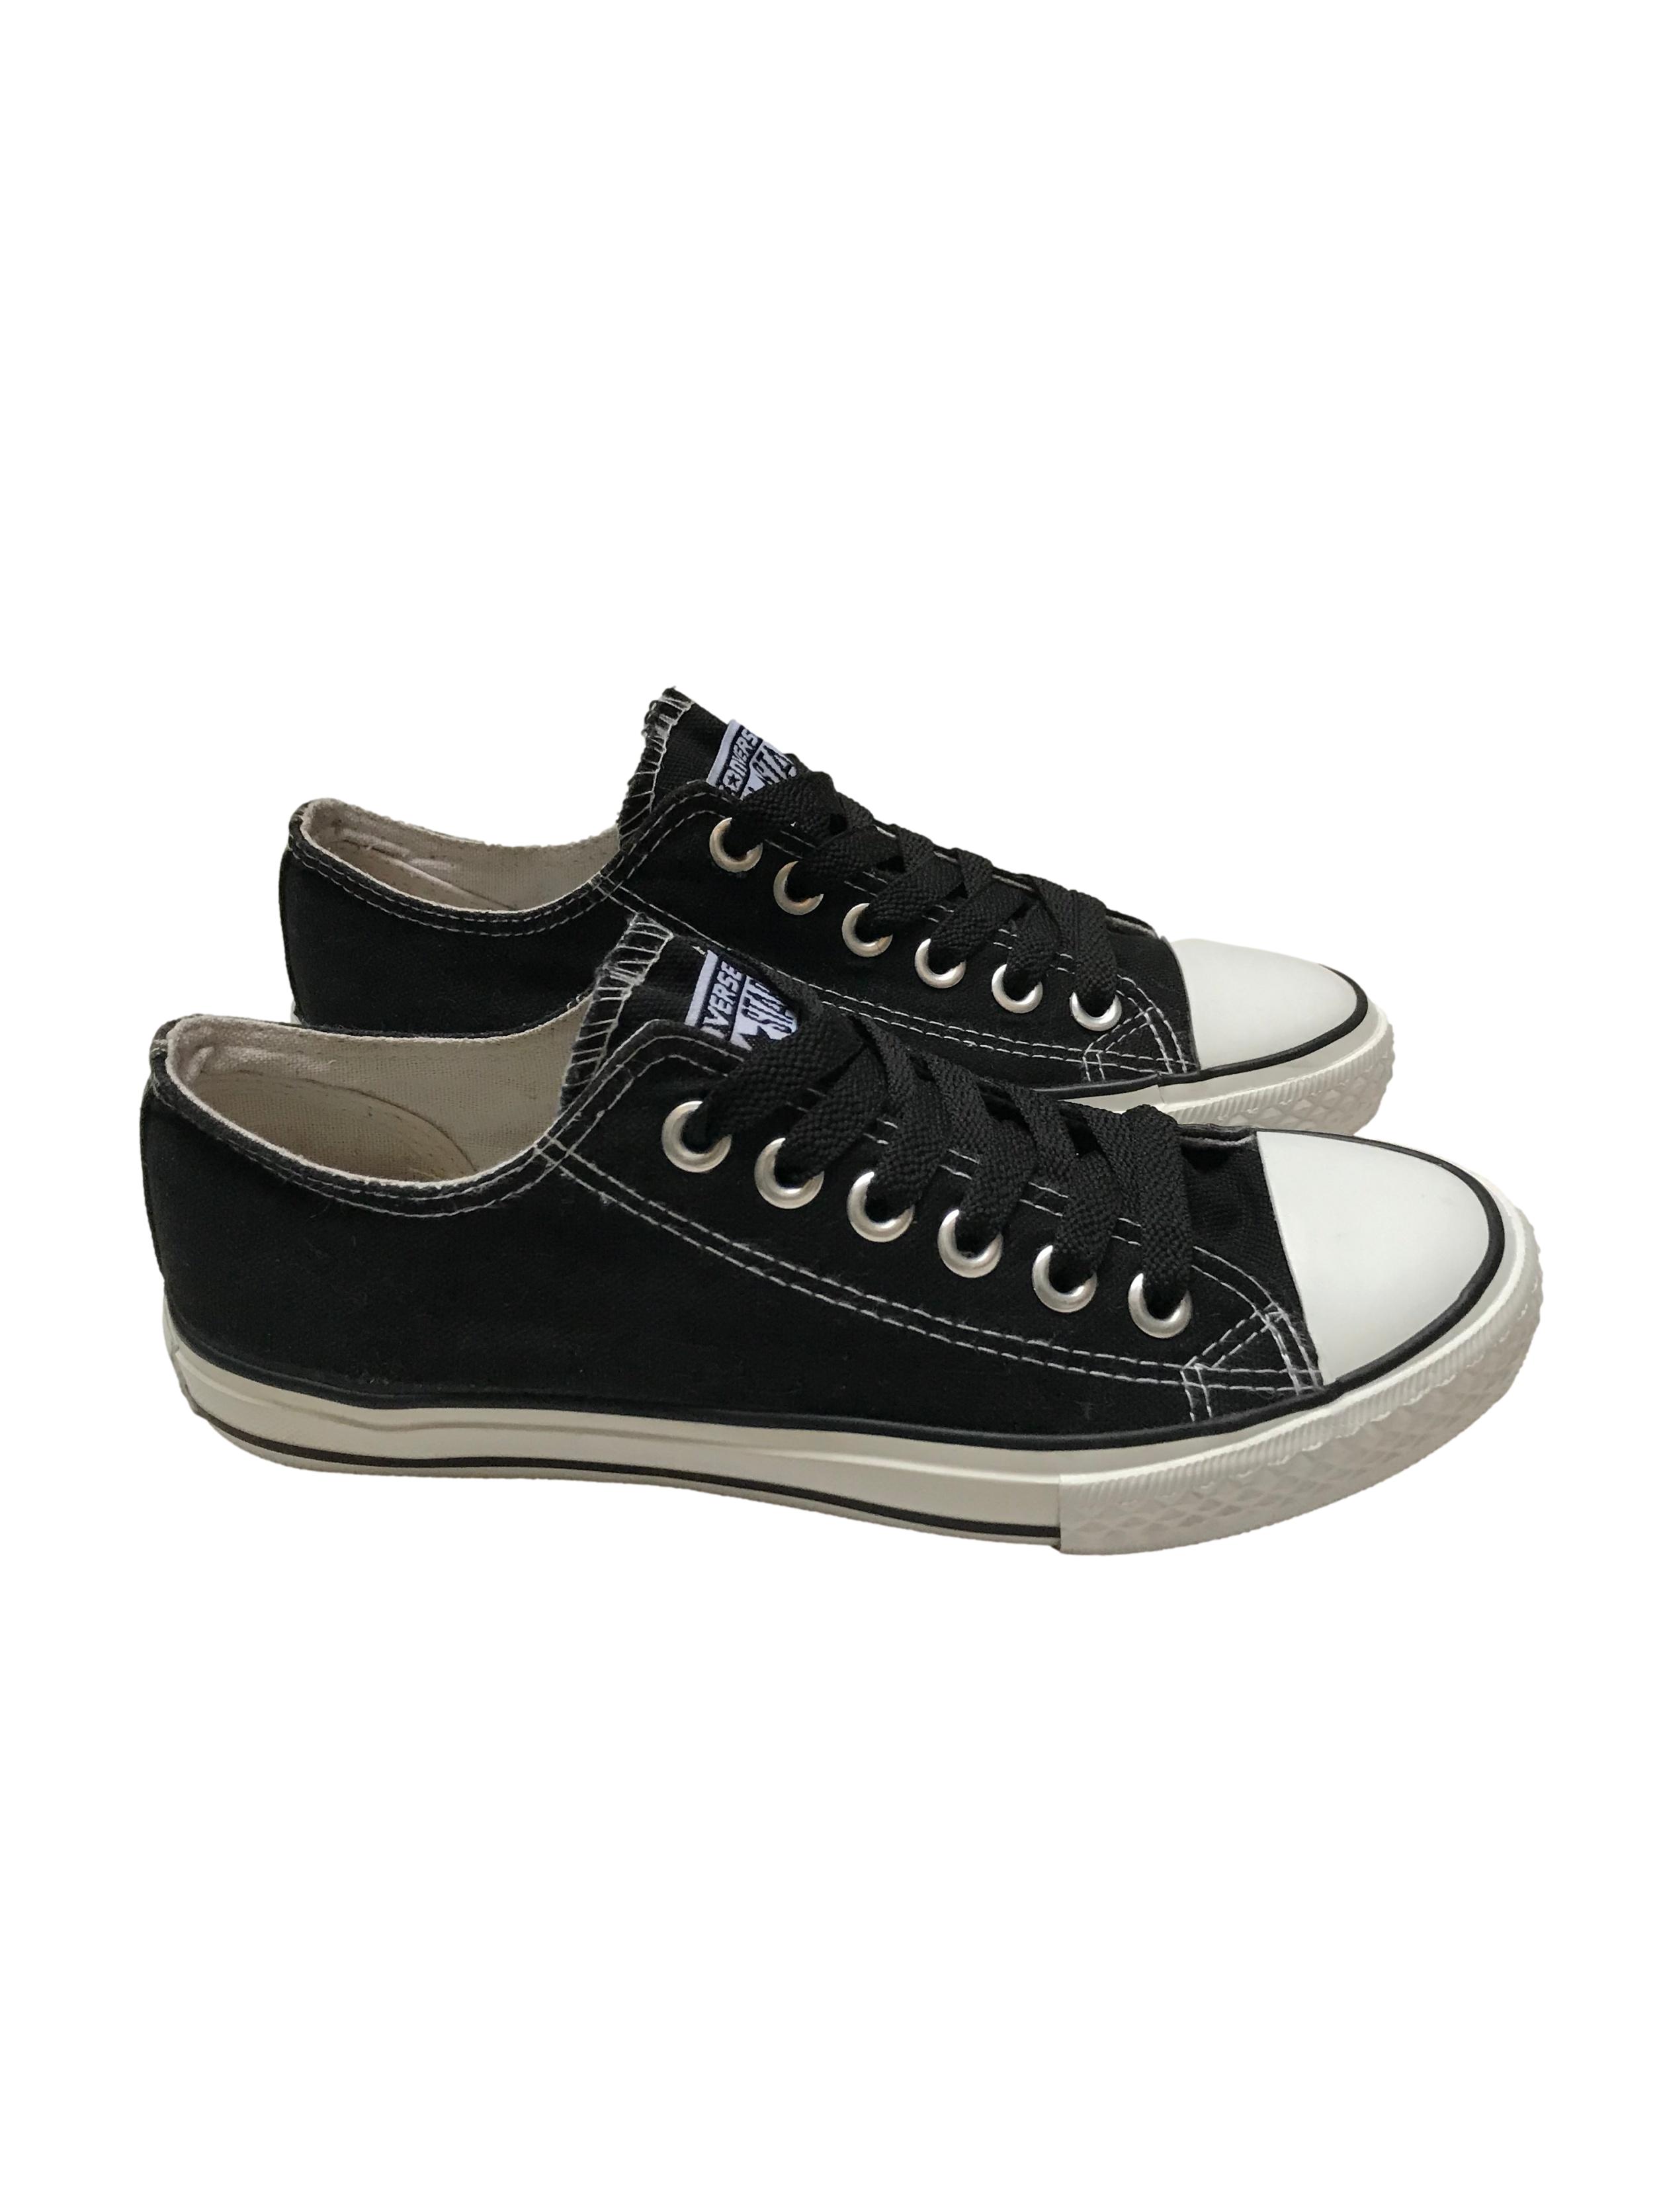 Zapatillas Converse negras con pasadores negros. Estado 8/10. Precio original S/ 189